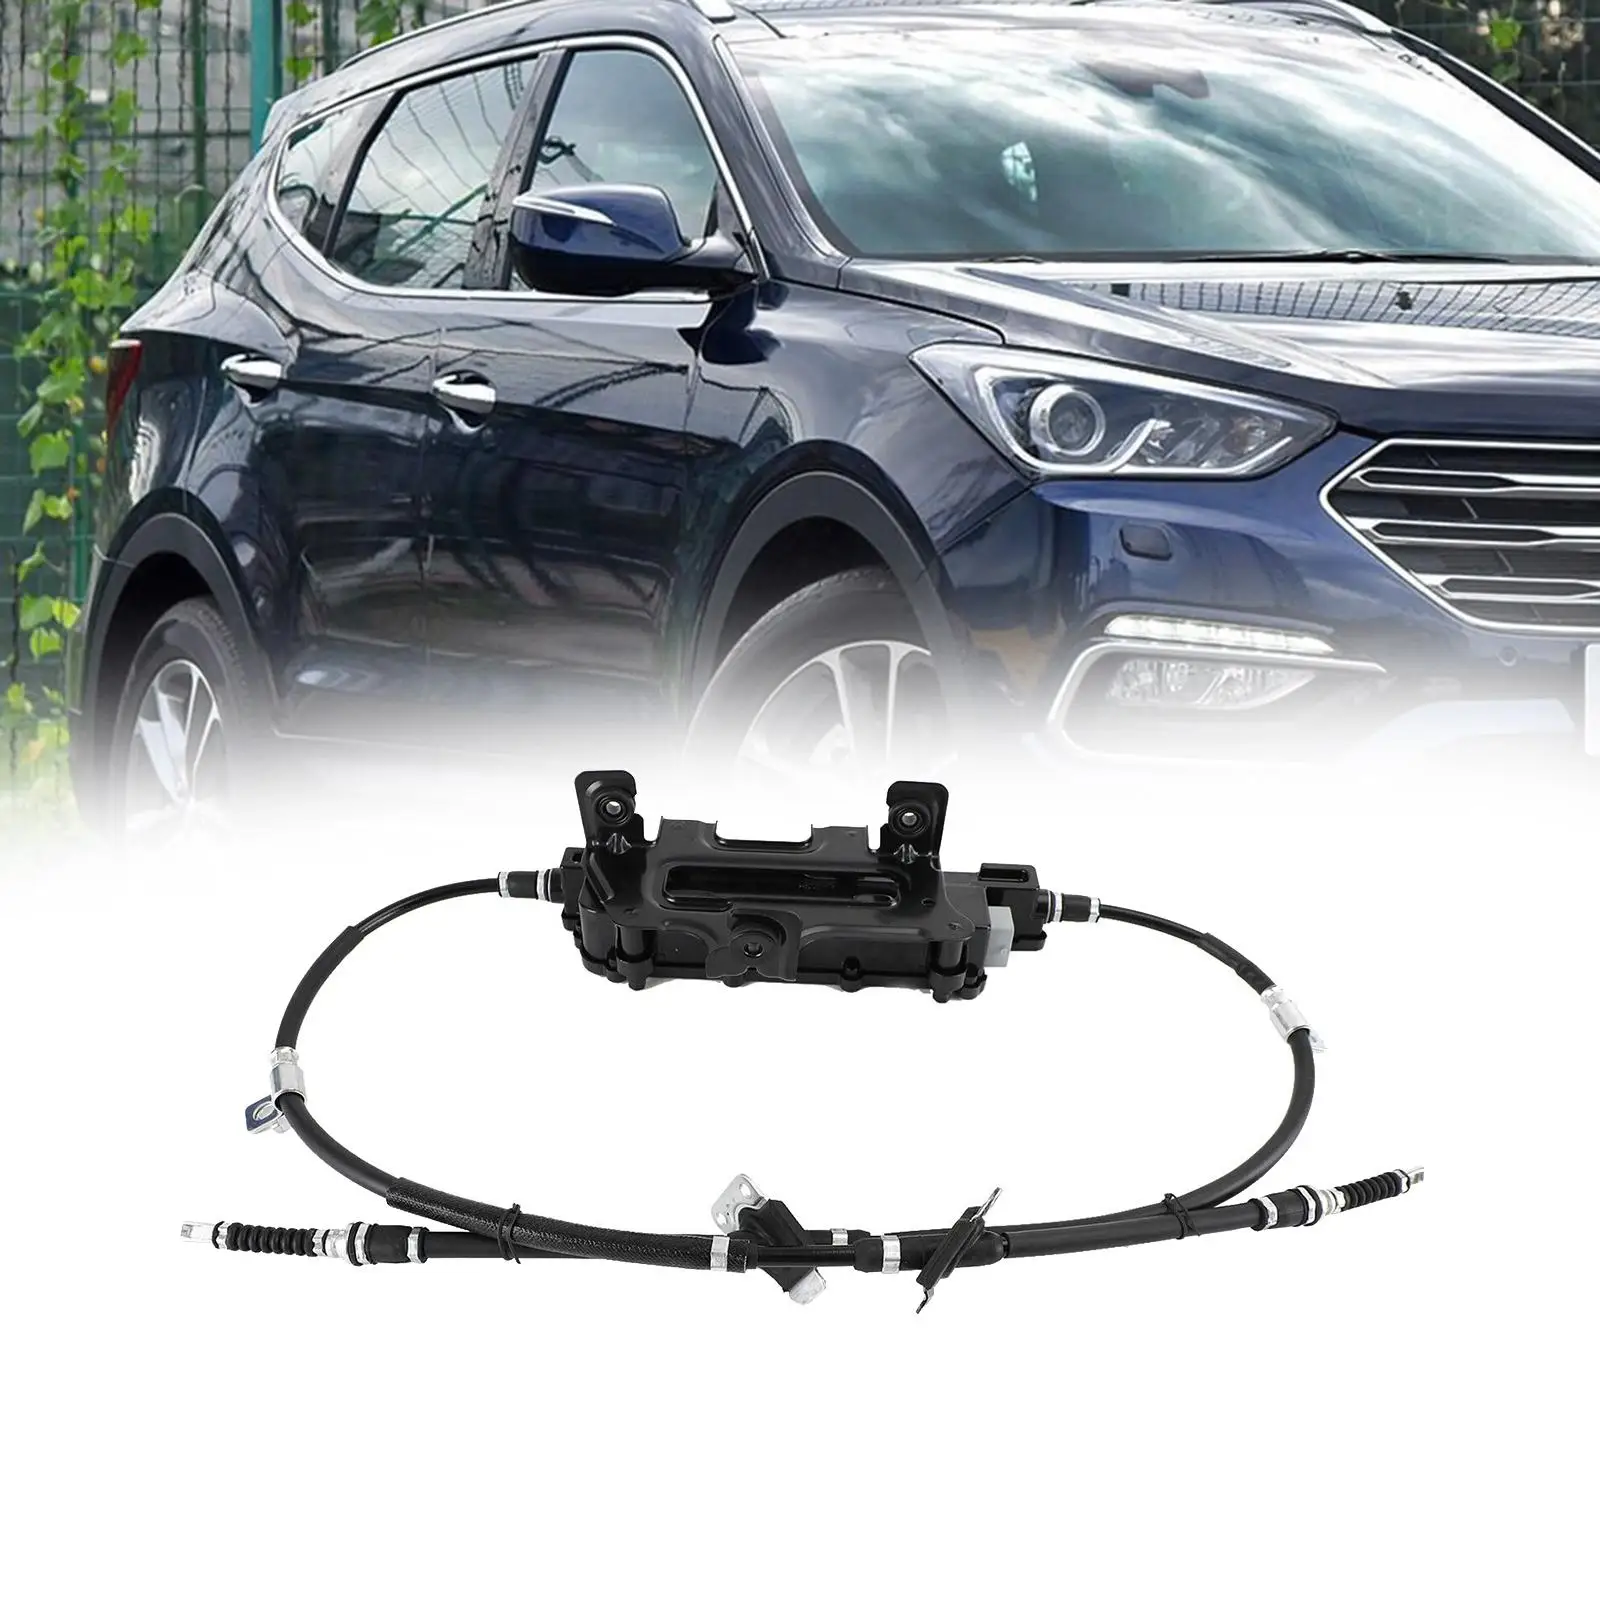 Parking Brake Handbrake Actuator Module Replaces Car Accessories Durable Premium 59700-b8700 for Hyundai Santa FE 2012-2019